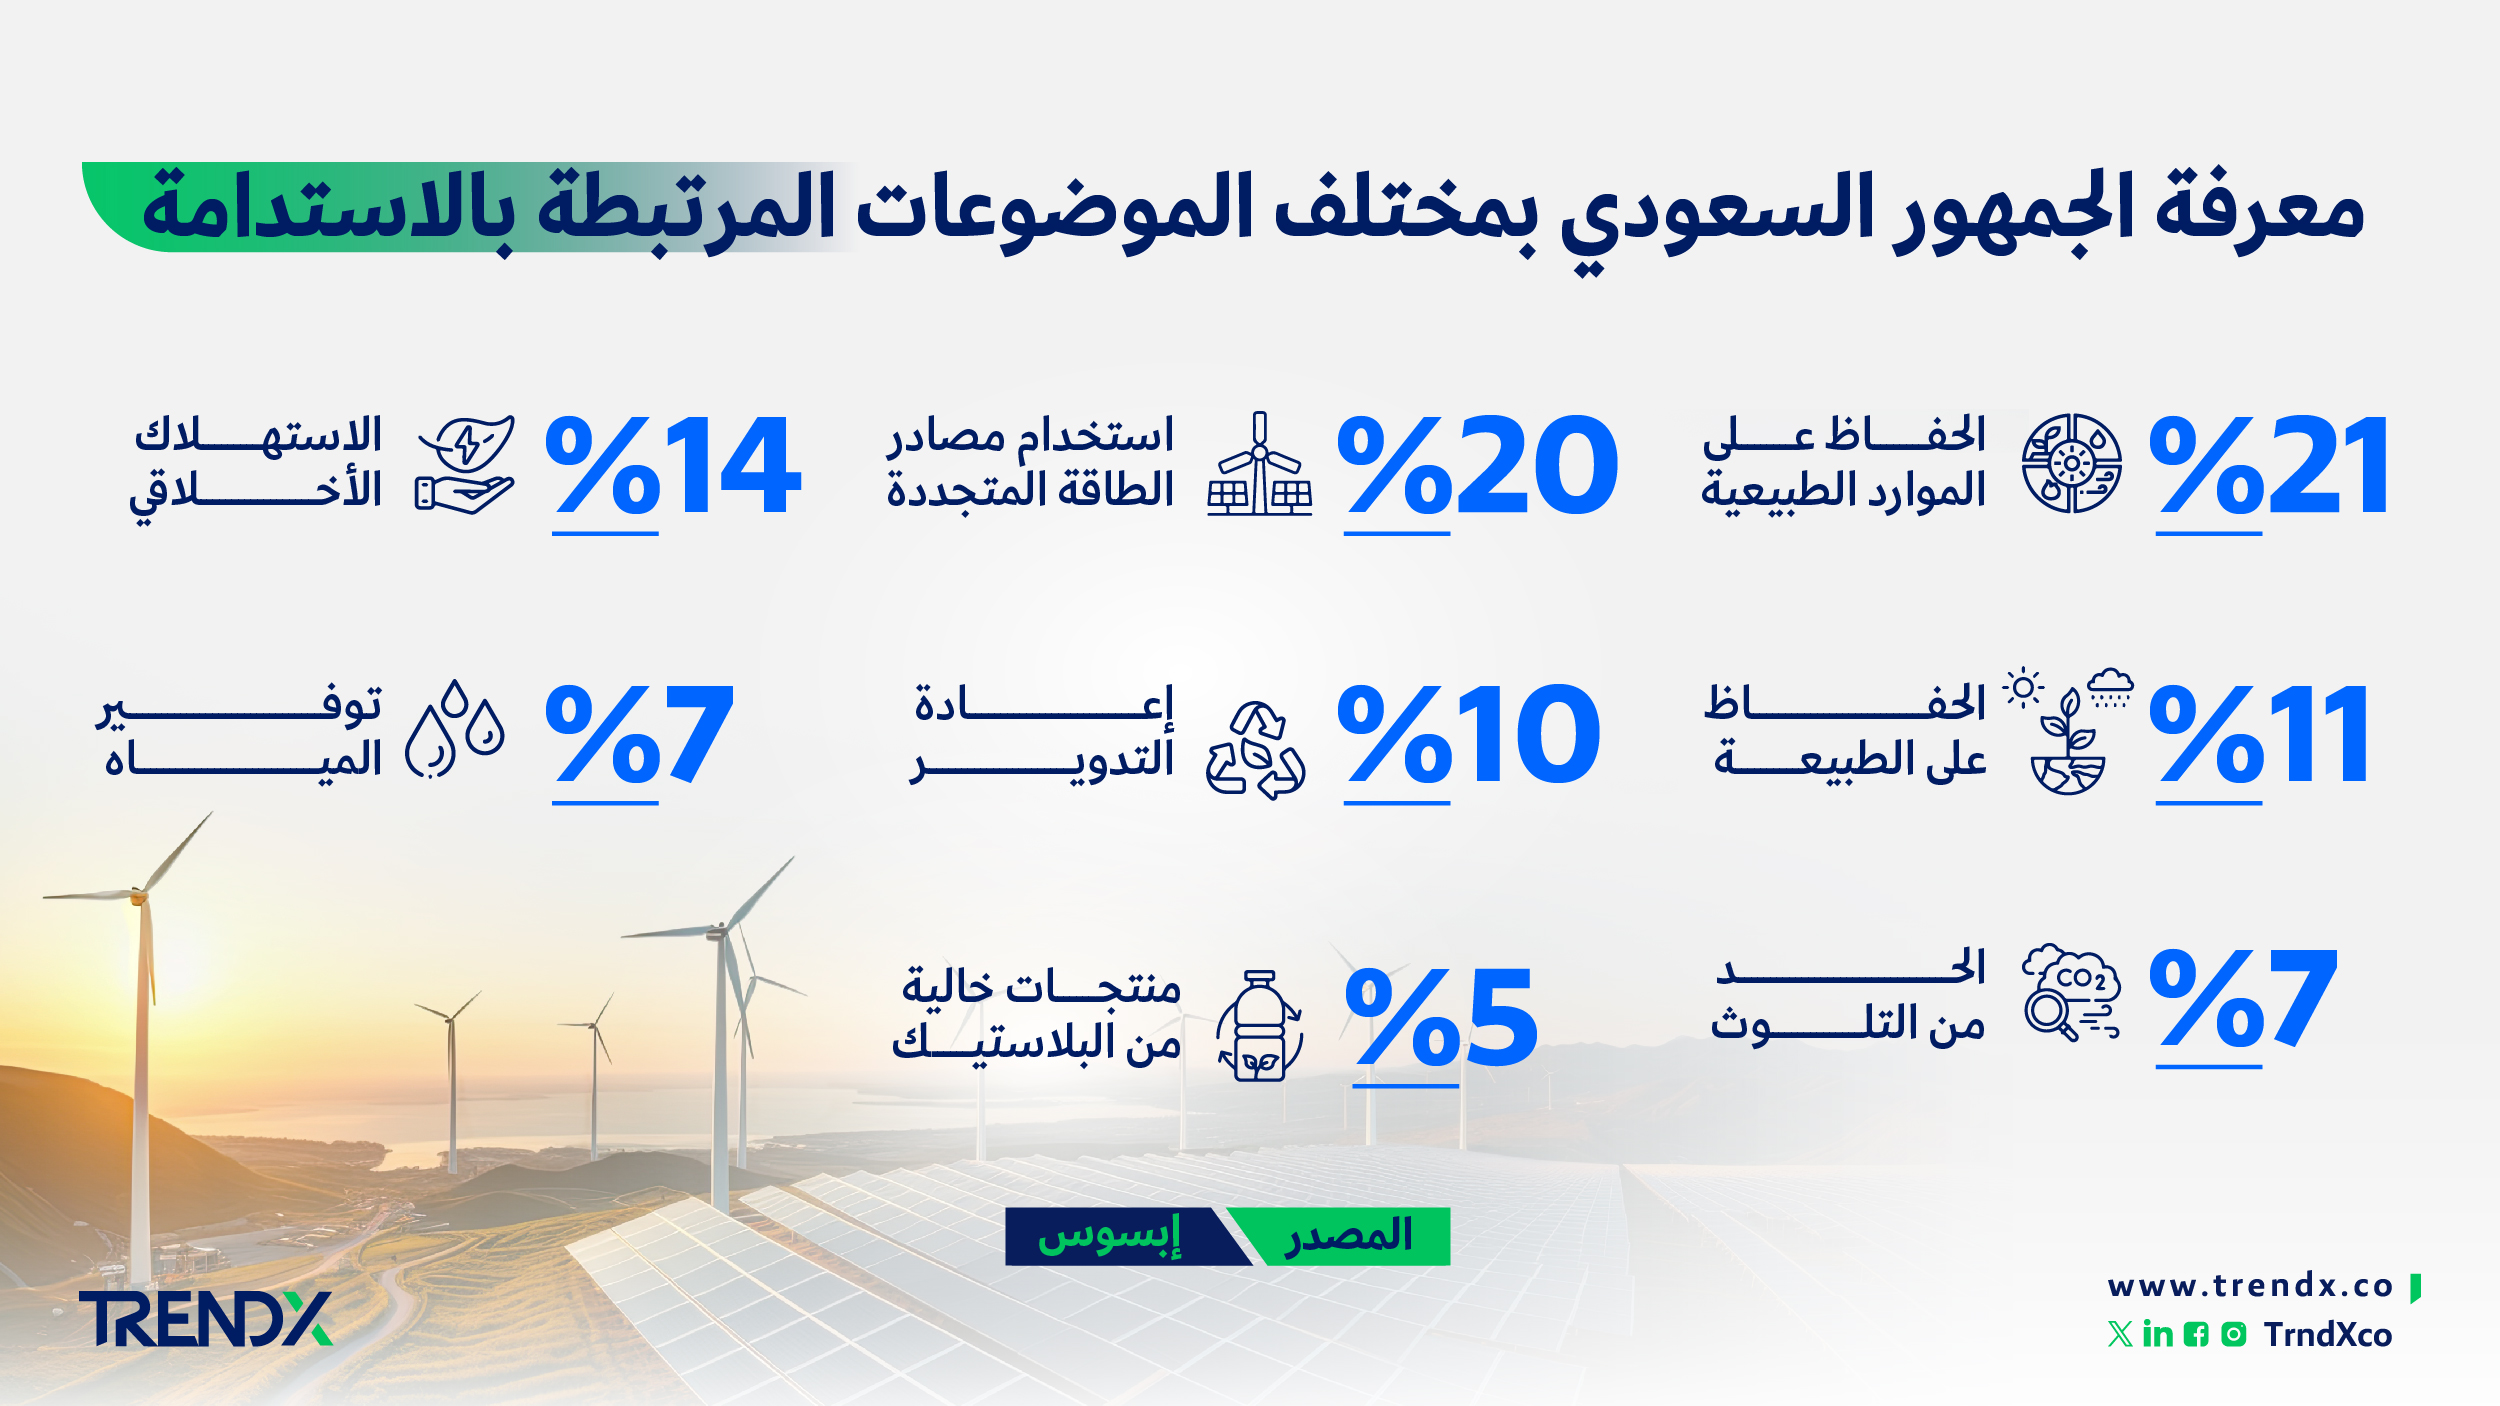 معرفة الجمهور السعودي بمختلف الموضوعات المرتبطة بالاستدامة ثروات السعوديين في الفترة من عام 2000 إلى 2022 01